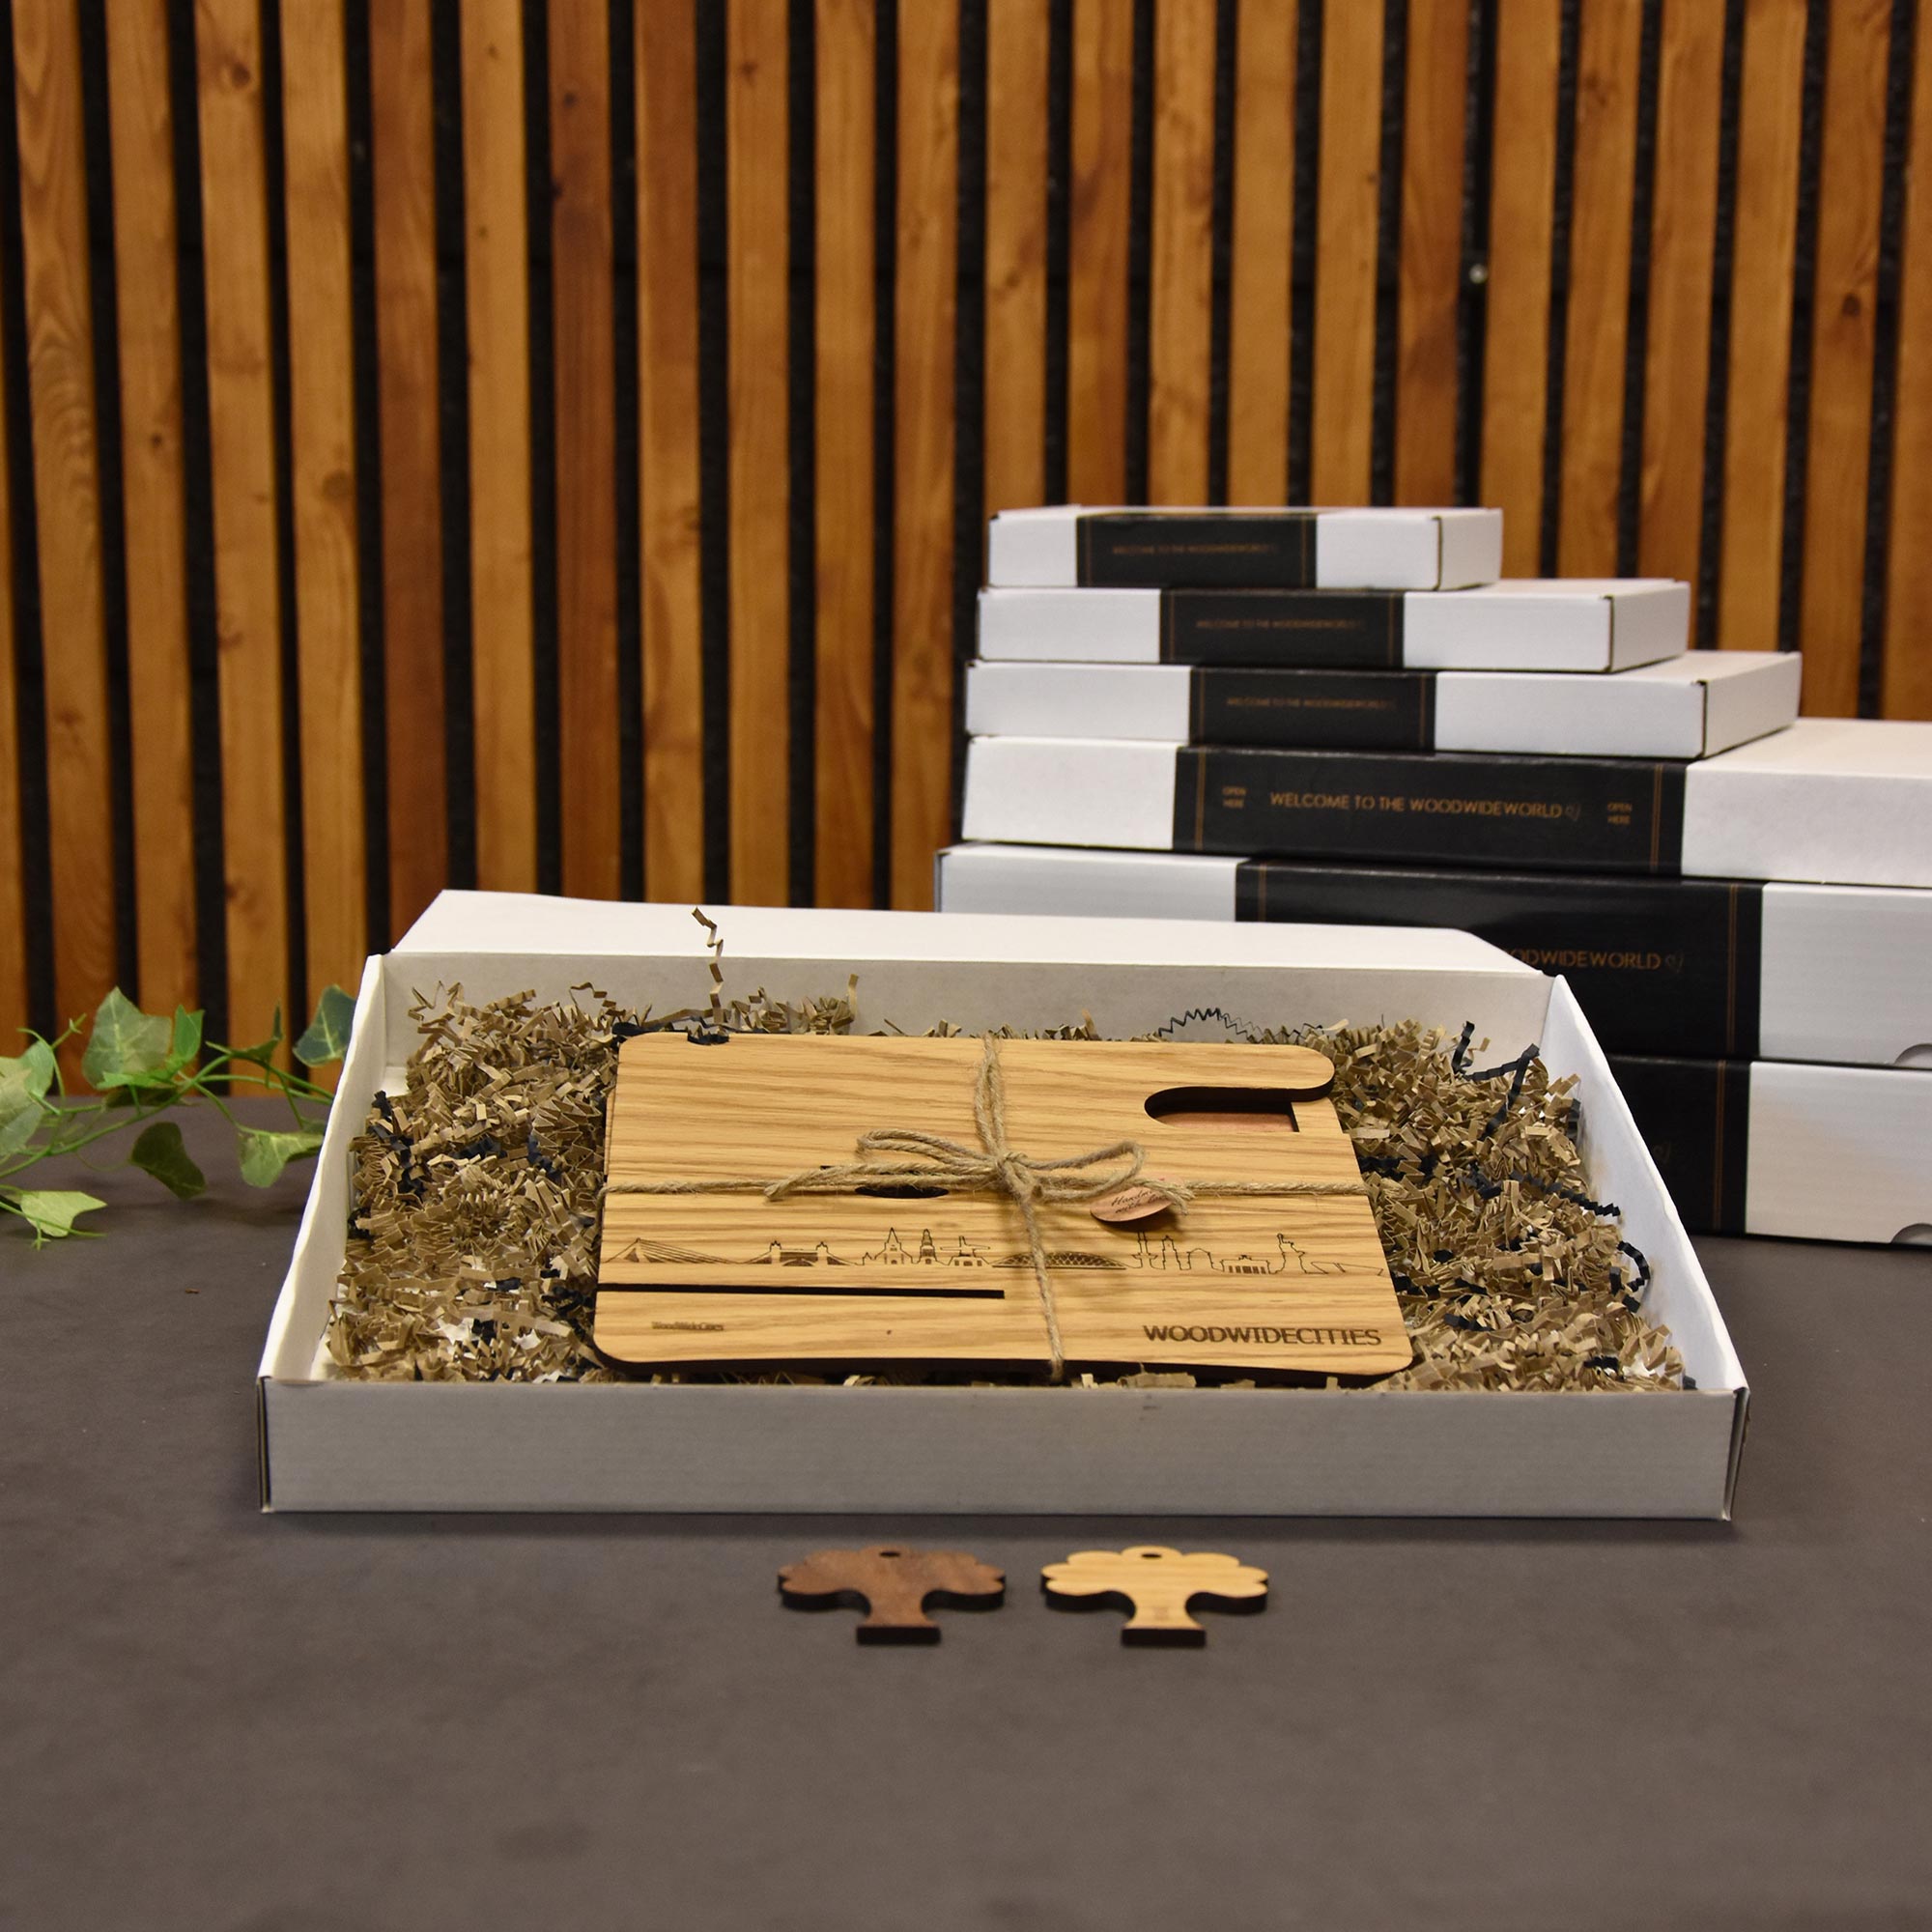 Skyline Desk Organizer Apeldoorn houten cadeau decoratie relatiegeschenk van WoodWideCities